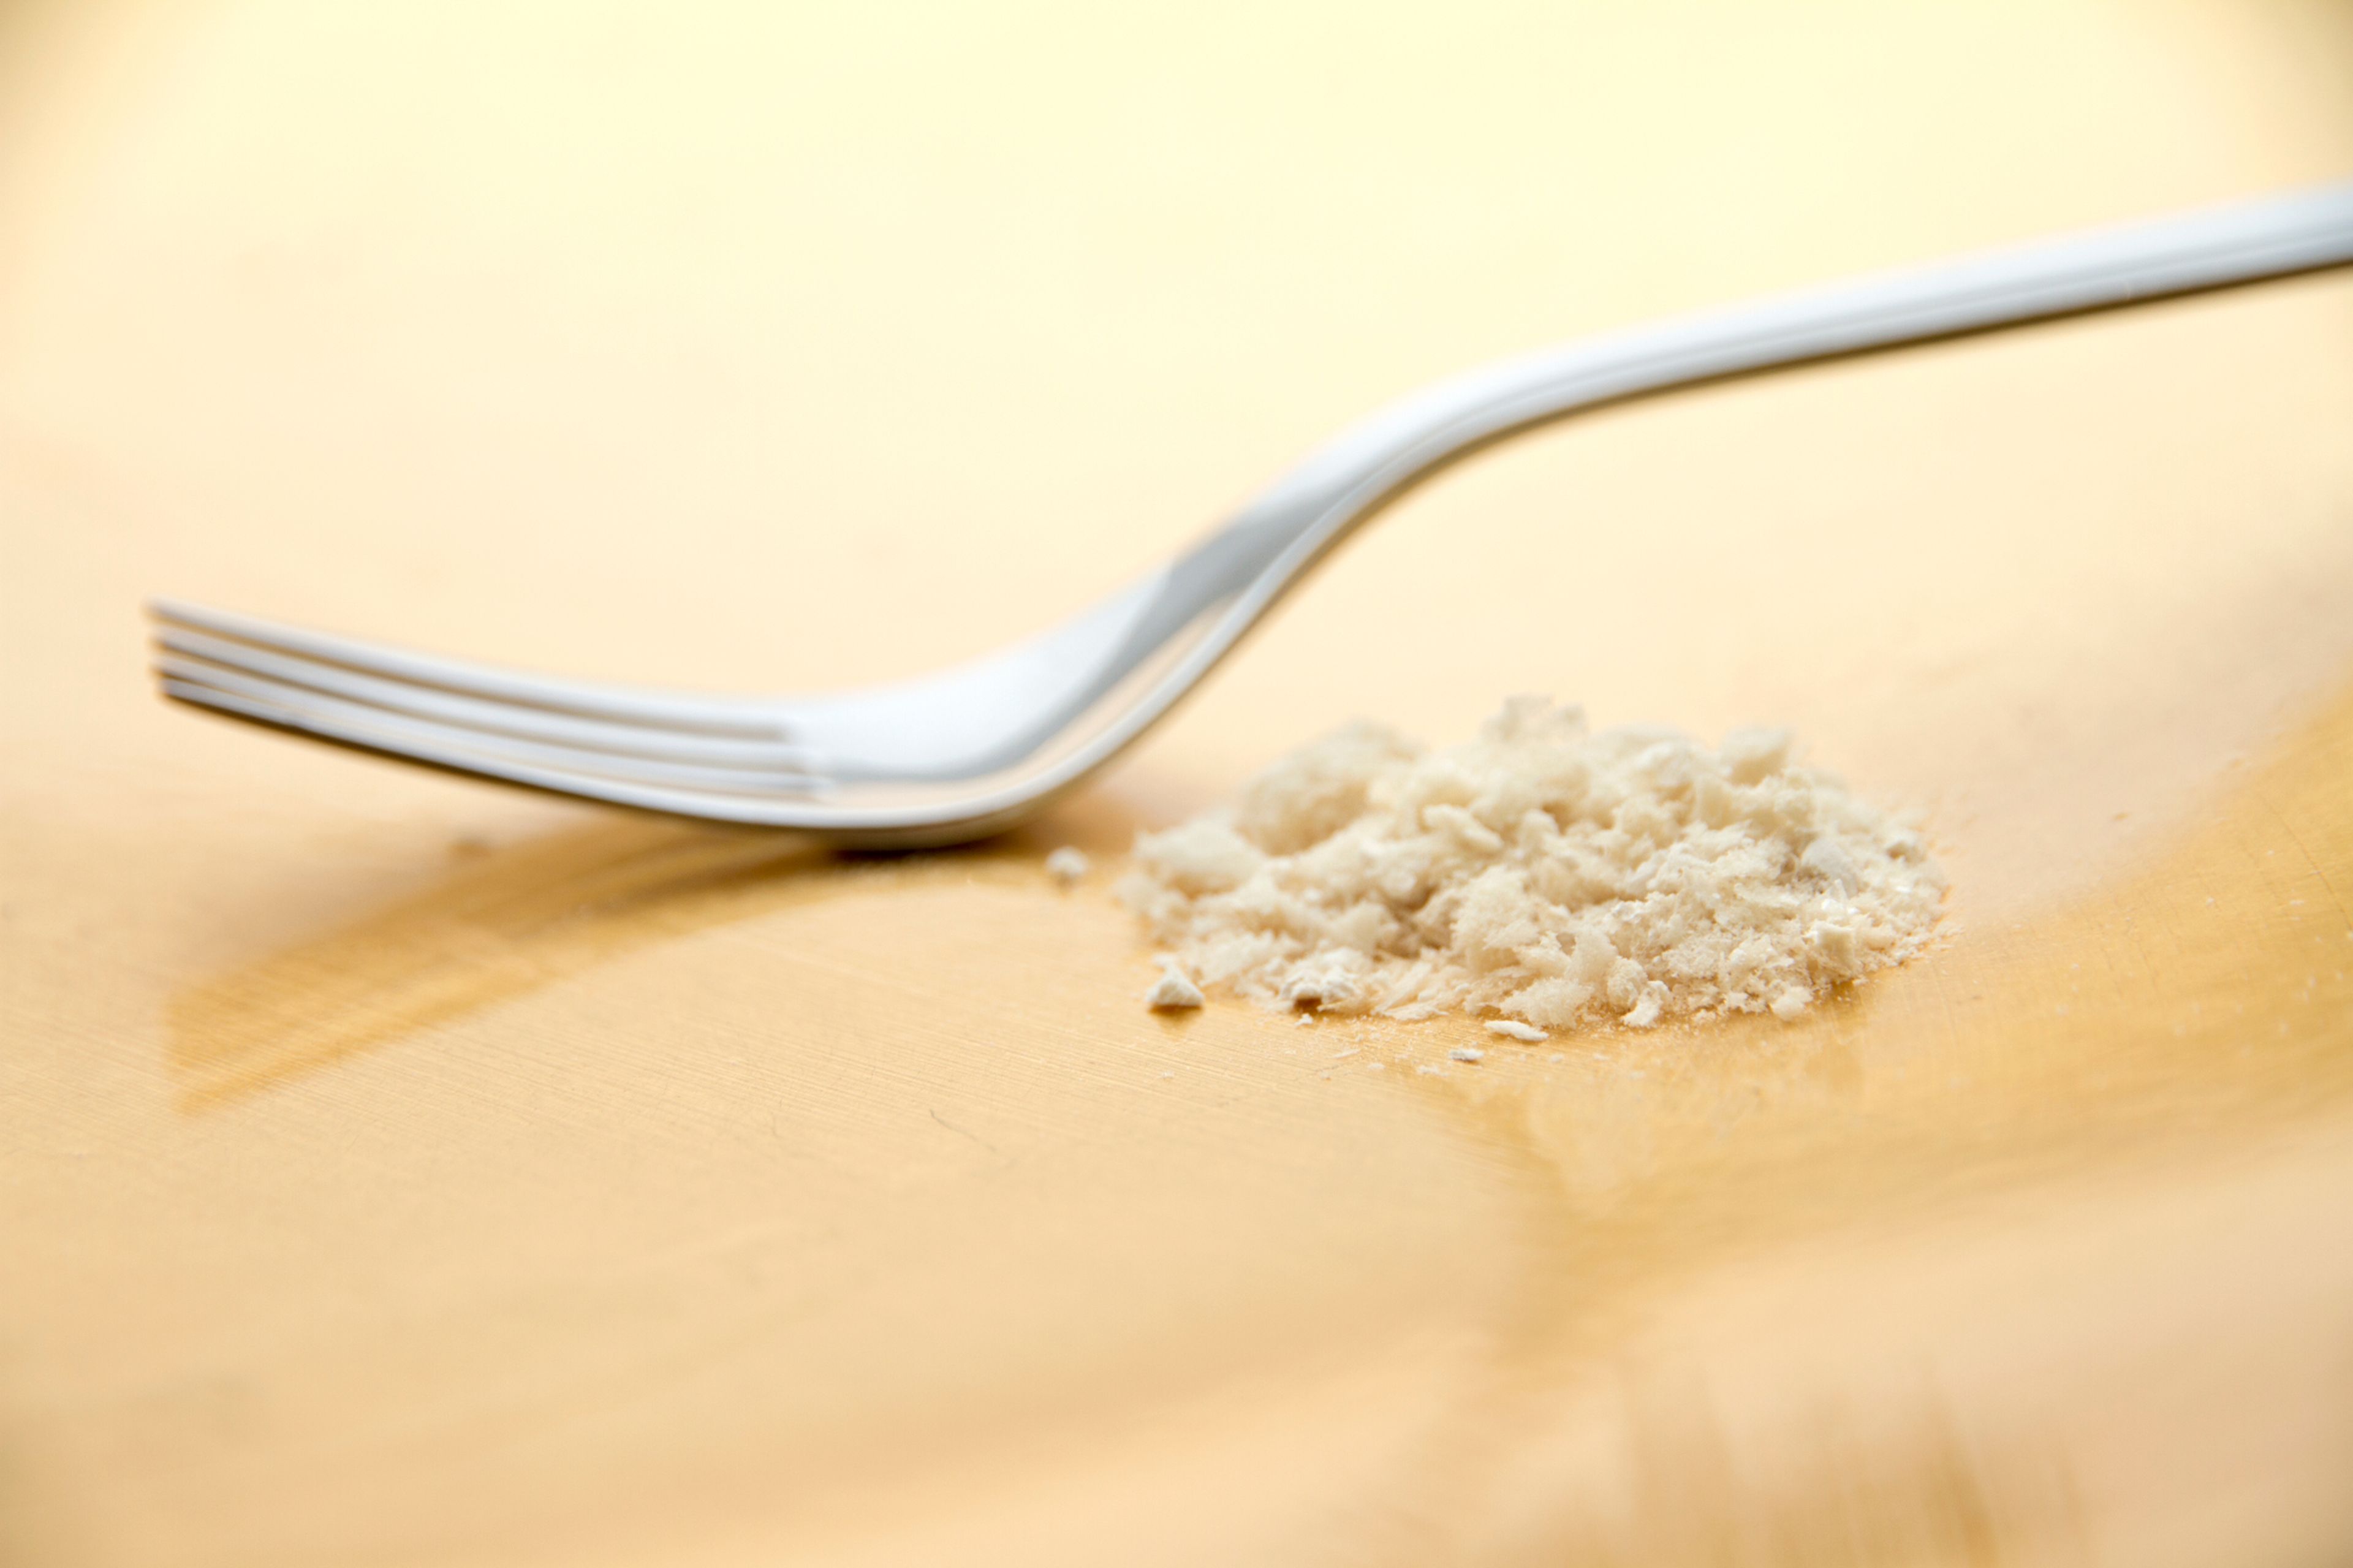 El polvo, de nombre "Solein", tiene un alto componente proteínico y un sabor y textura similar al de la harina de trigo.